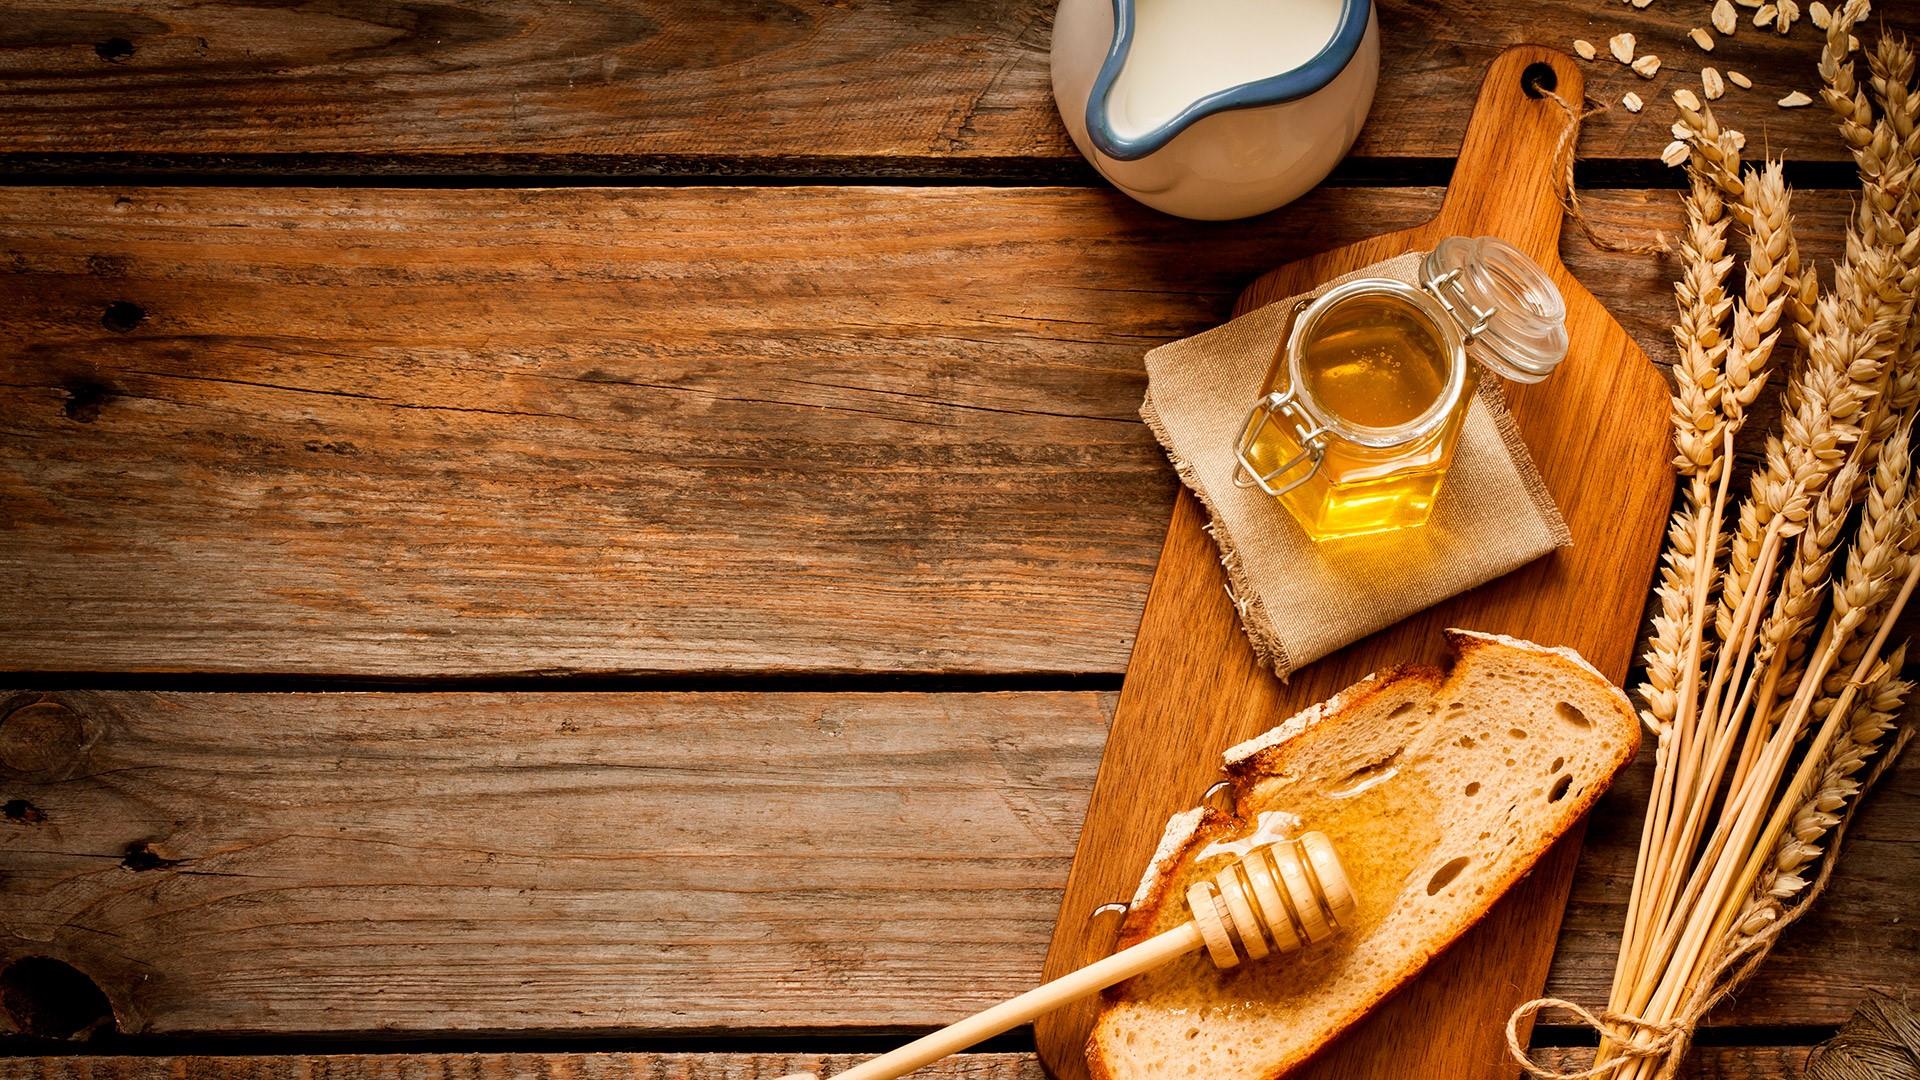 تشخیص عسل طبیعی - عسل هفت گل - عسل آجیلی - عسل مدنی - هفت گل - عسل ارگانیک - عسل خالص - عسل طبیعی - عسل مرغوب - عسل با کیفیت - تولید کننده عسل - بهترین تولید کننده عسل - عرضه عسل طبیعی - عرضه عسل - با کیفیت ترین عسل -